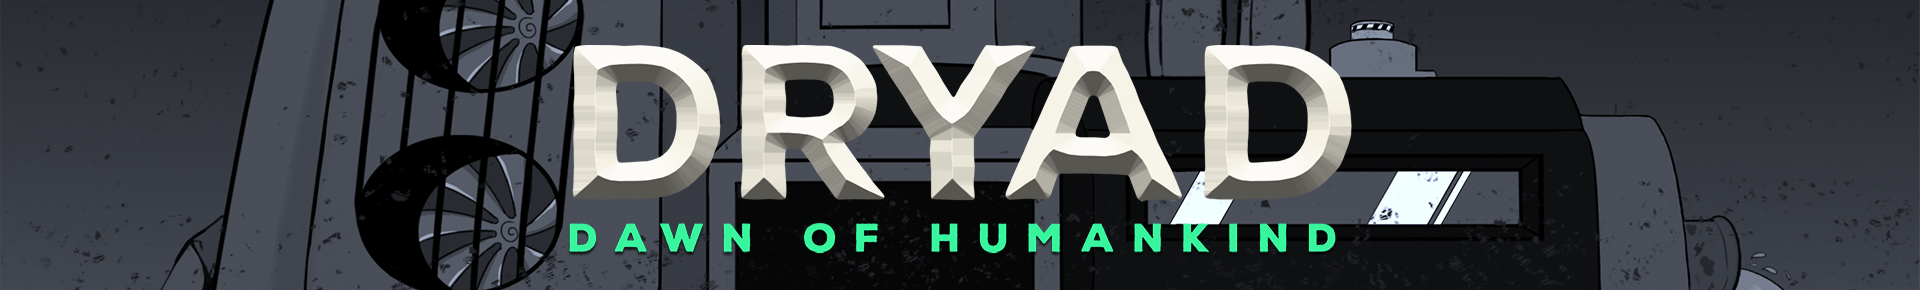 DRYAD: Dawn of Humankind